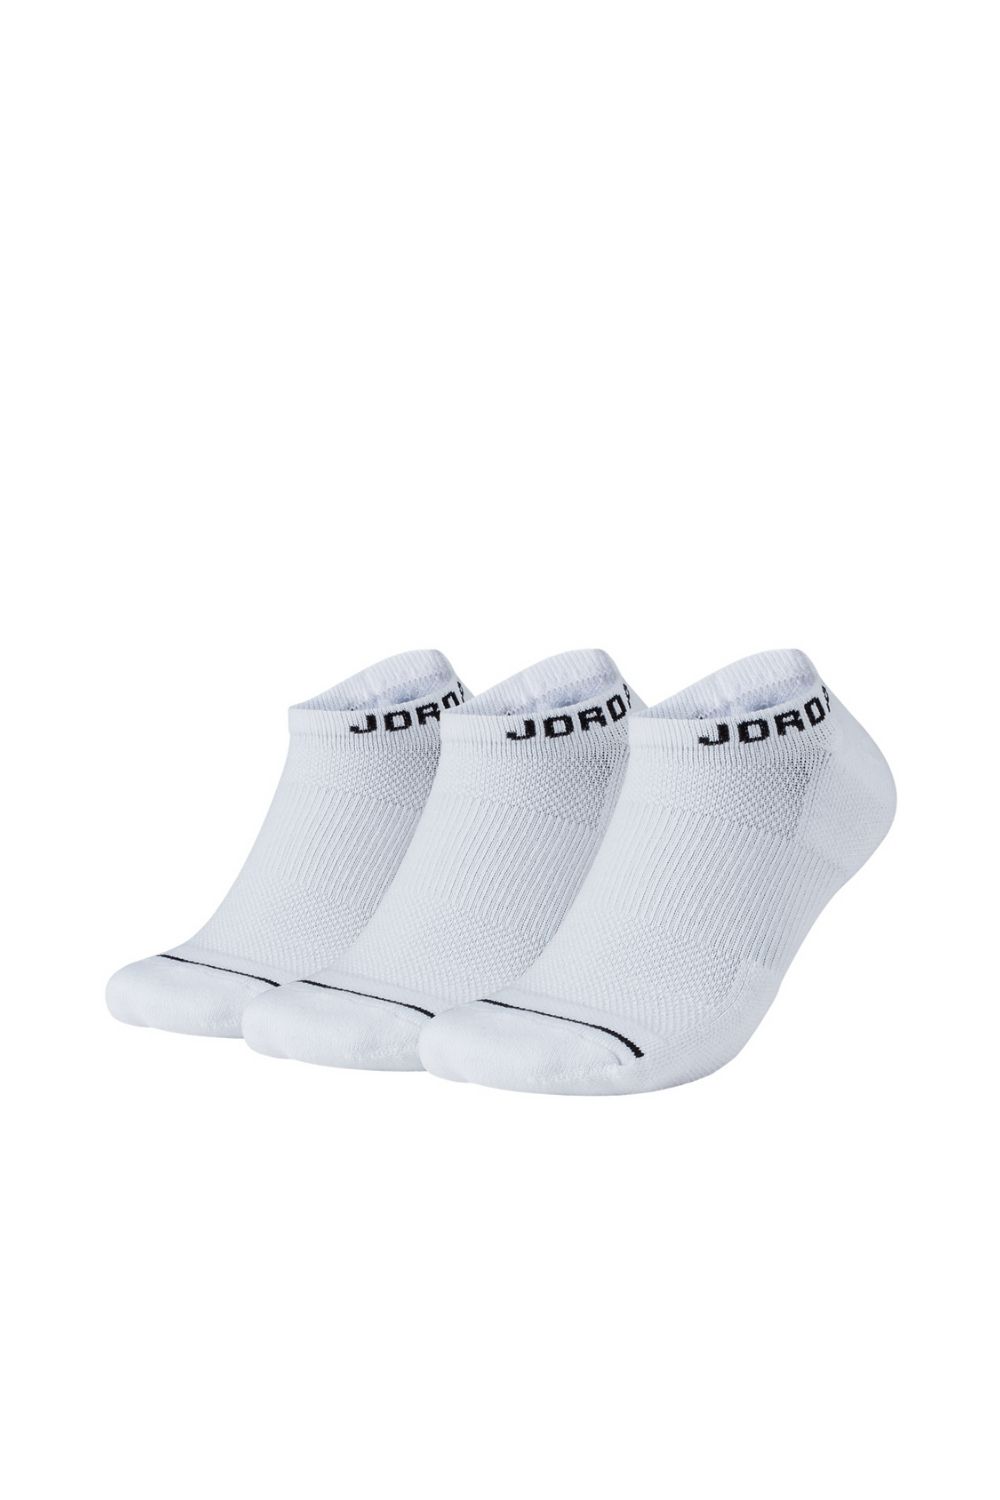 NIKE - Σετ unisex κάλτσες Nike JORDAN EVRY MAX NS λευκές Γυναικεία/Αξεσουάρ/Κάλτσες